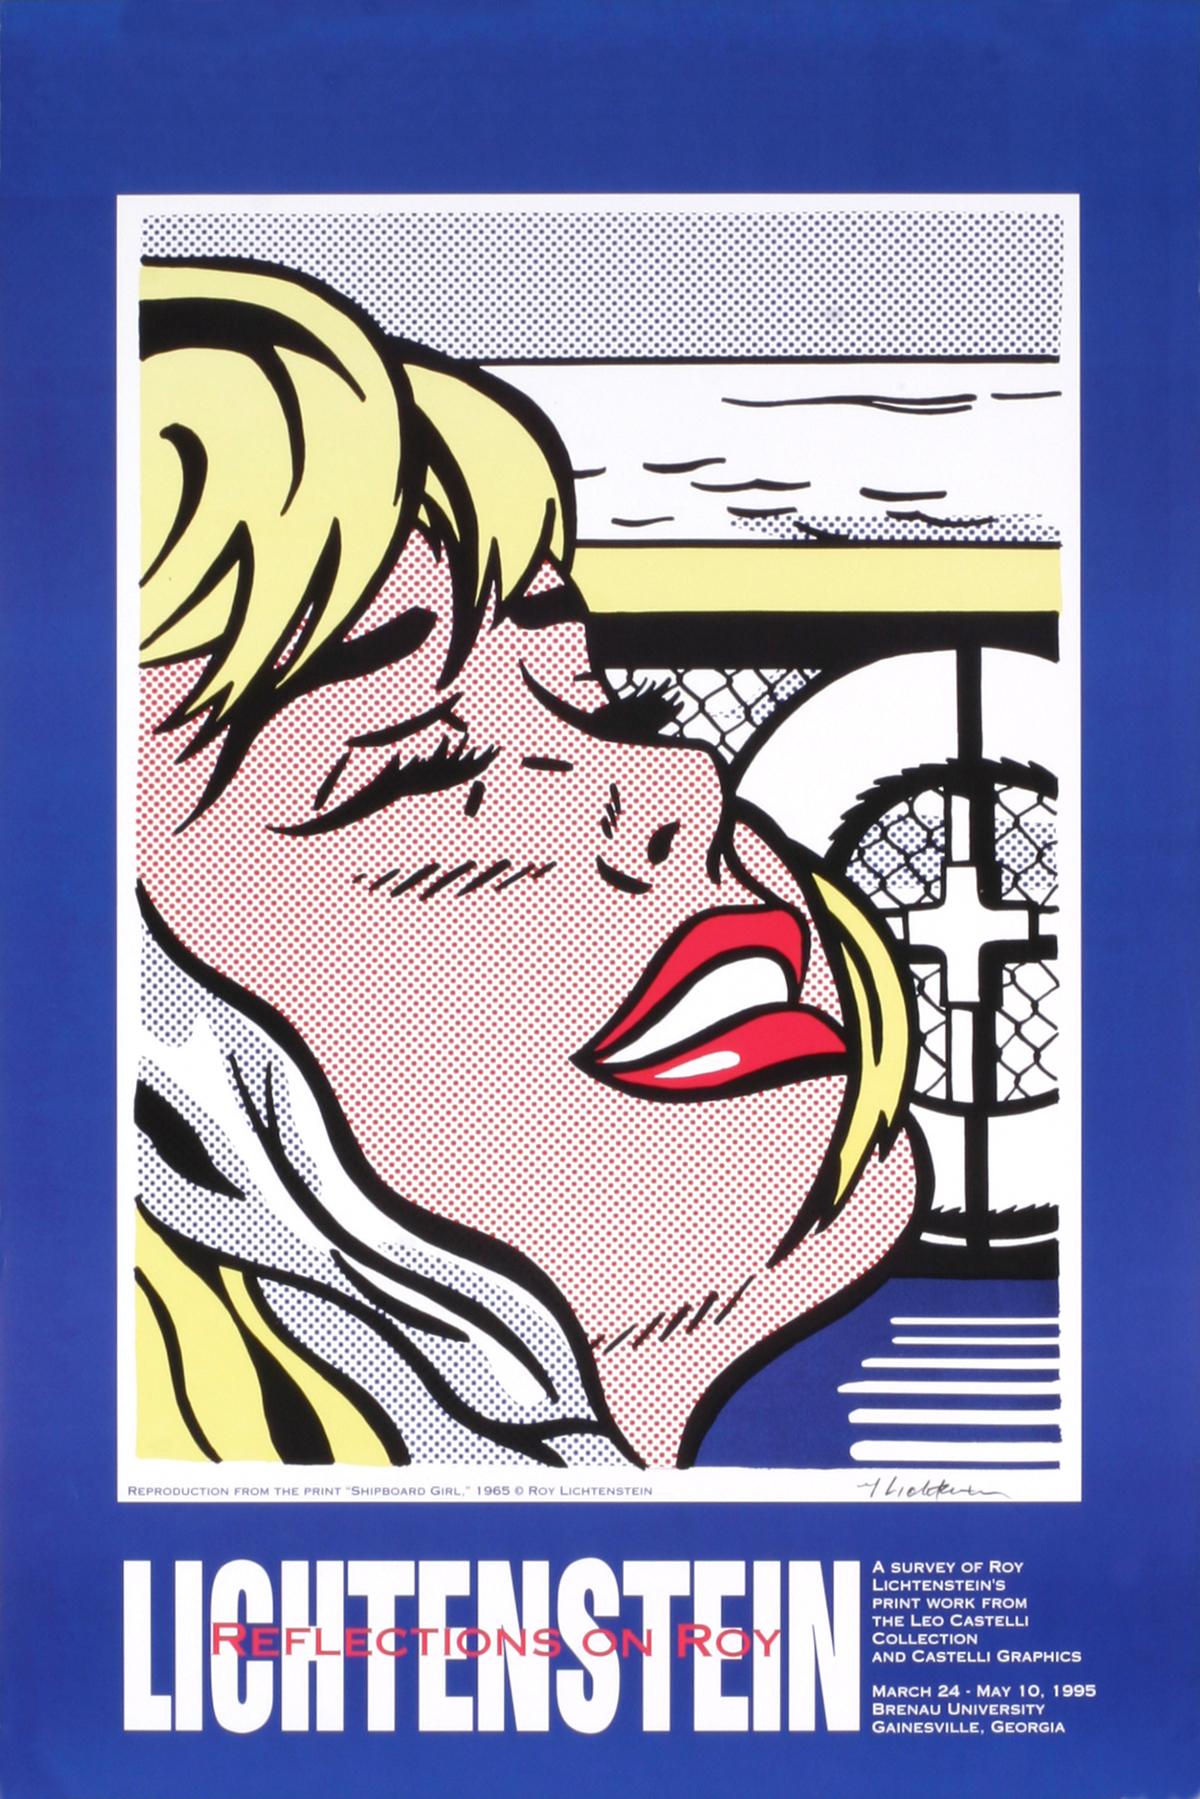 Shipboard Girl-30.25" x 20" Exhibition Poster-1995 - Print by Roy Lichtenstein